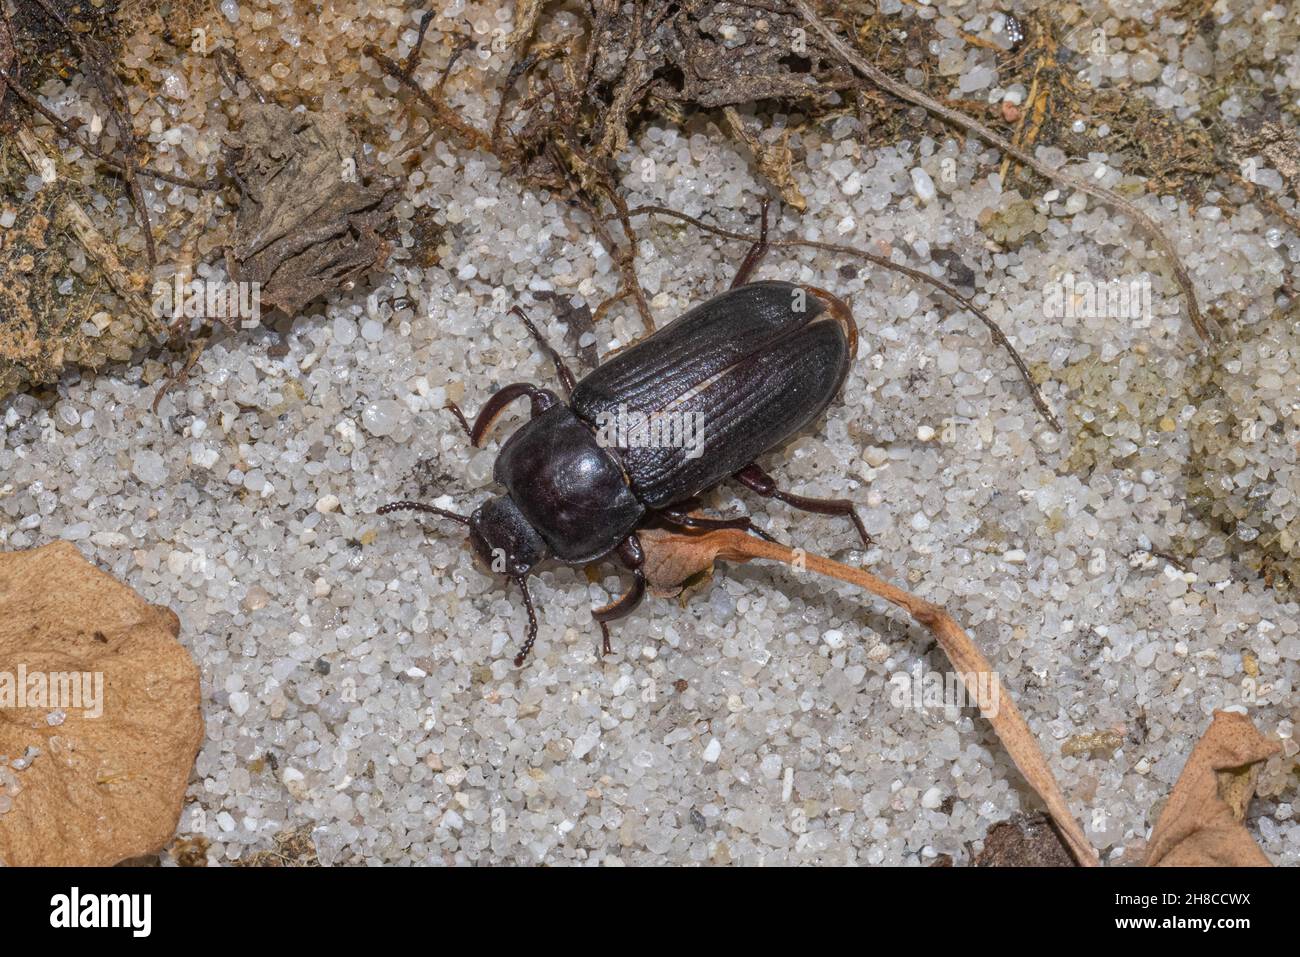 yellow mealworm beetle (Tenebrio molitor), on sandy ground, Germany Stock Photo